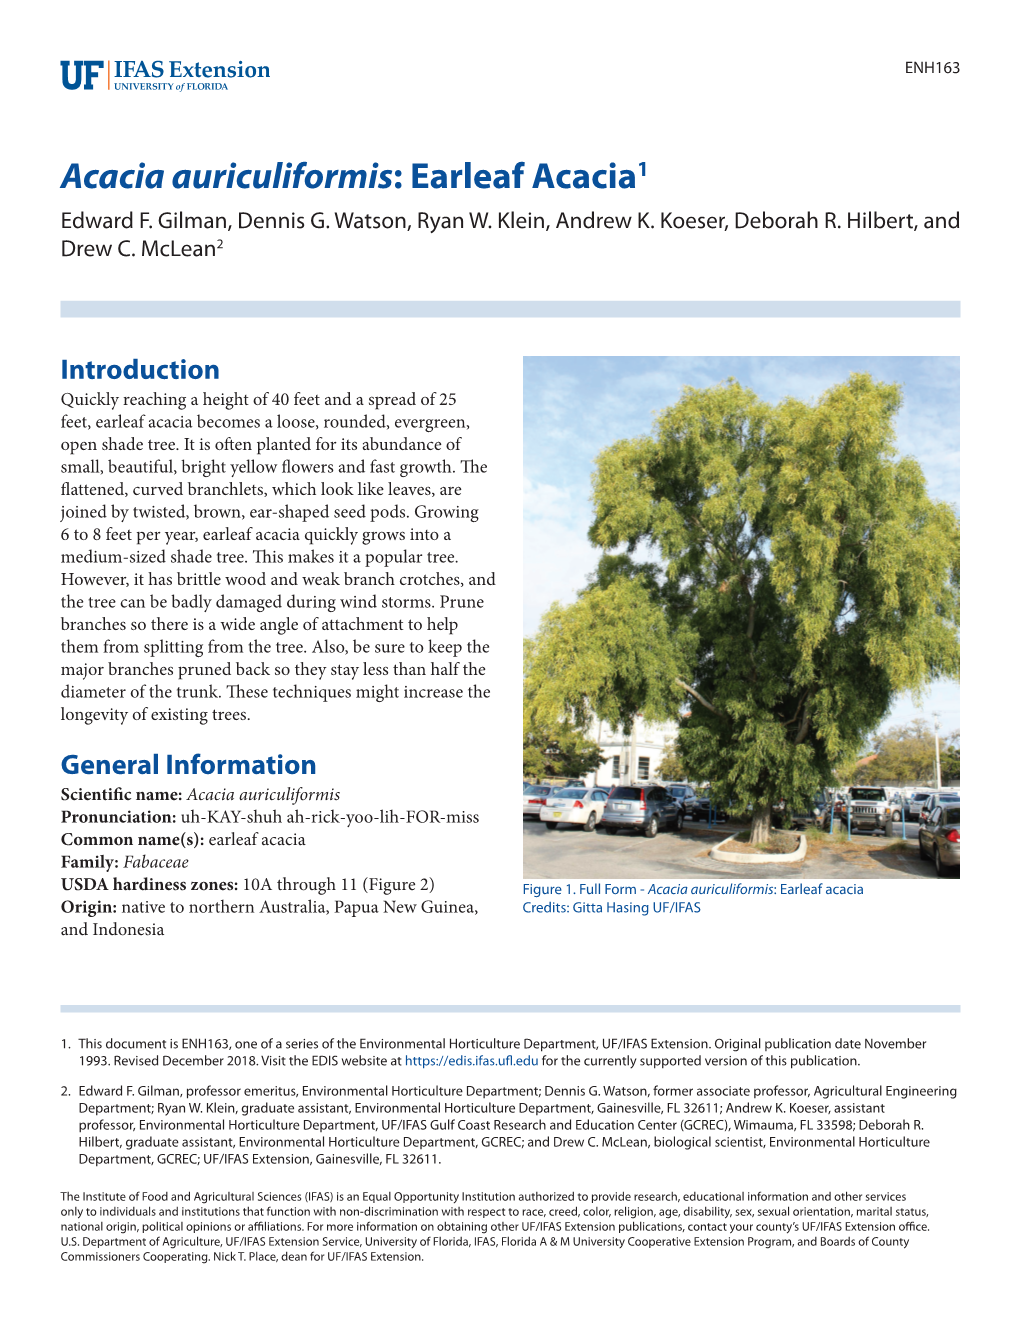 Acacia Auriculiformis: Earleaf Acacia1 Edward F